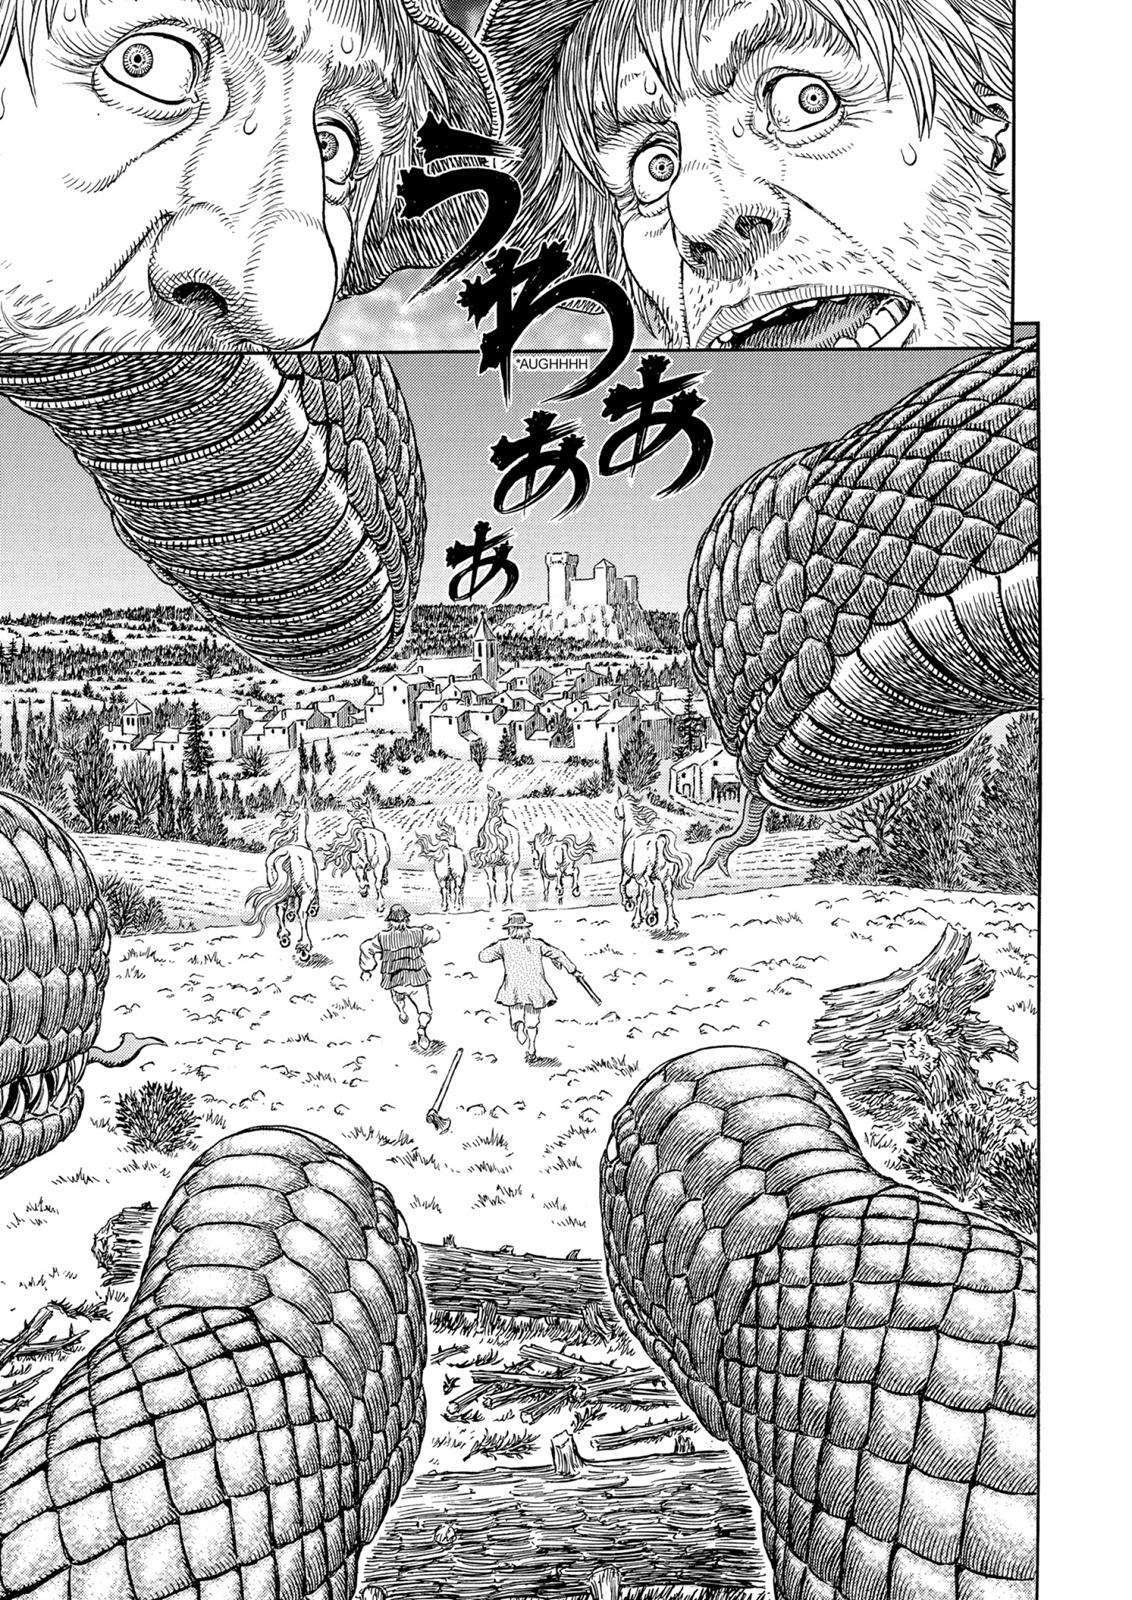 Berserk Manga Chapter 305 image 14